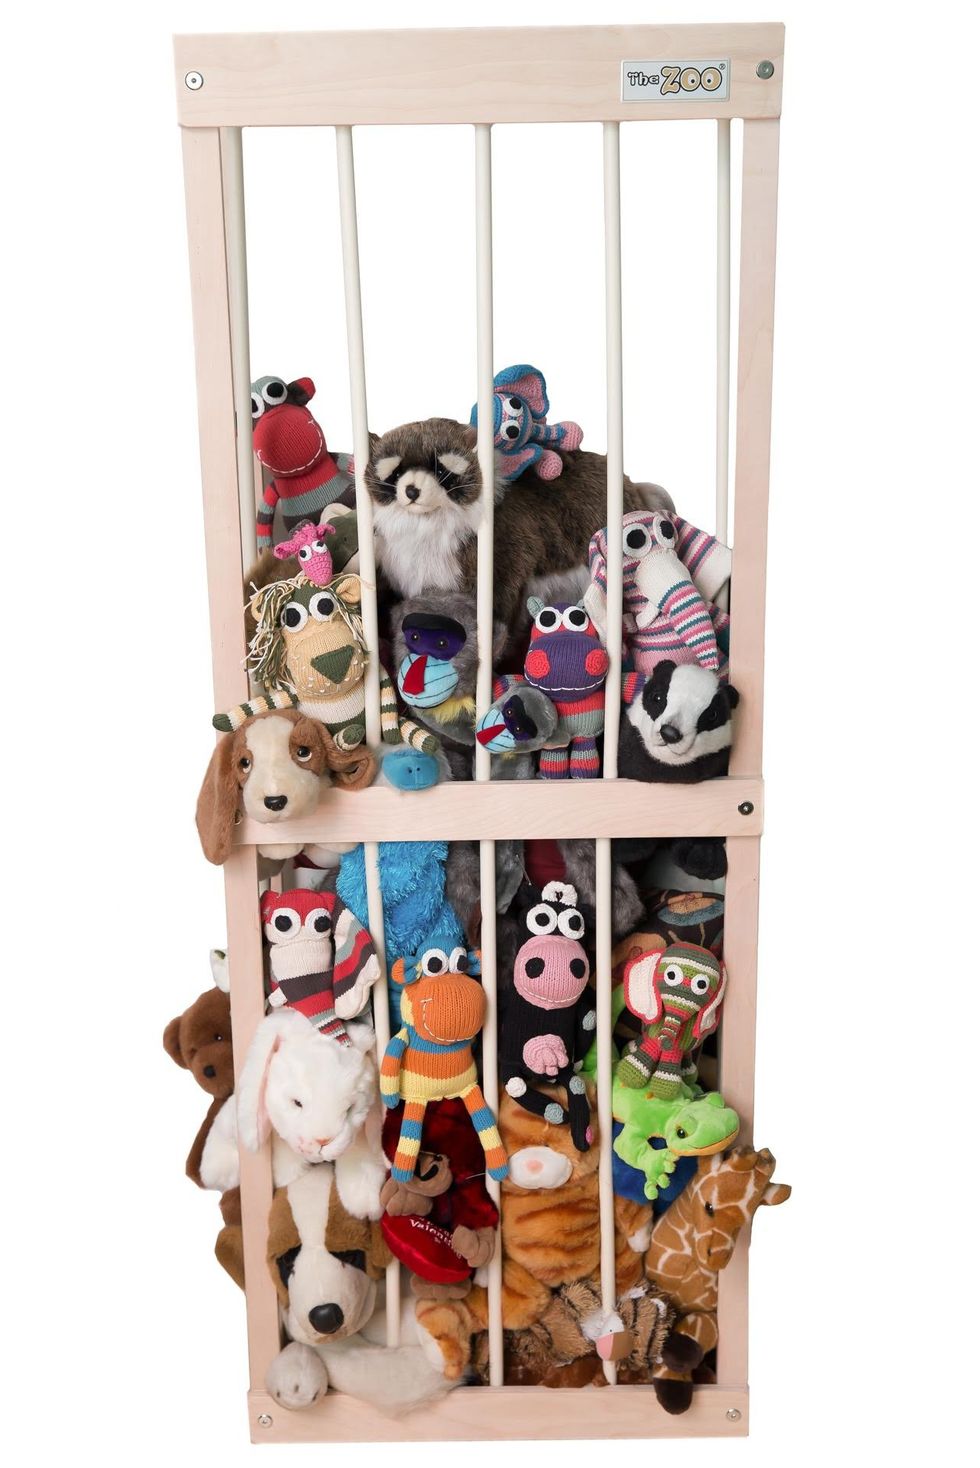 19 Stuffed Animal Storage Ideas - Best Ideas for Toy Storage